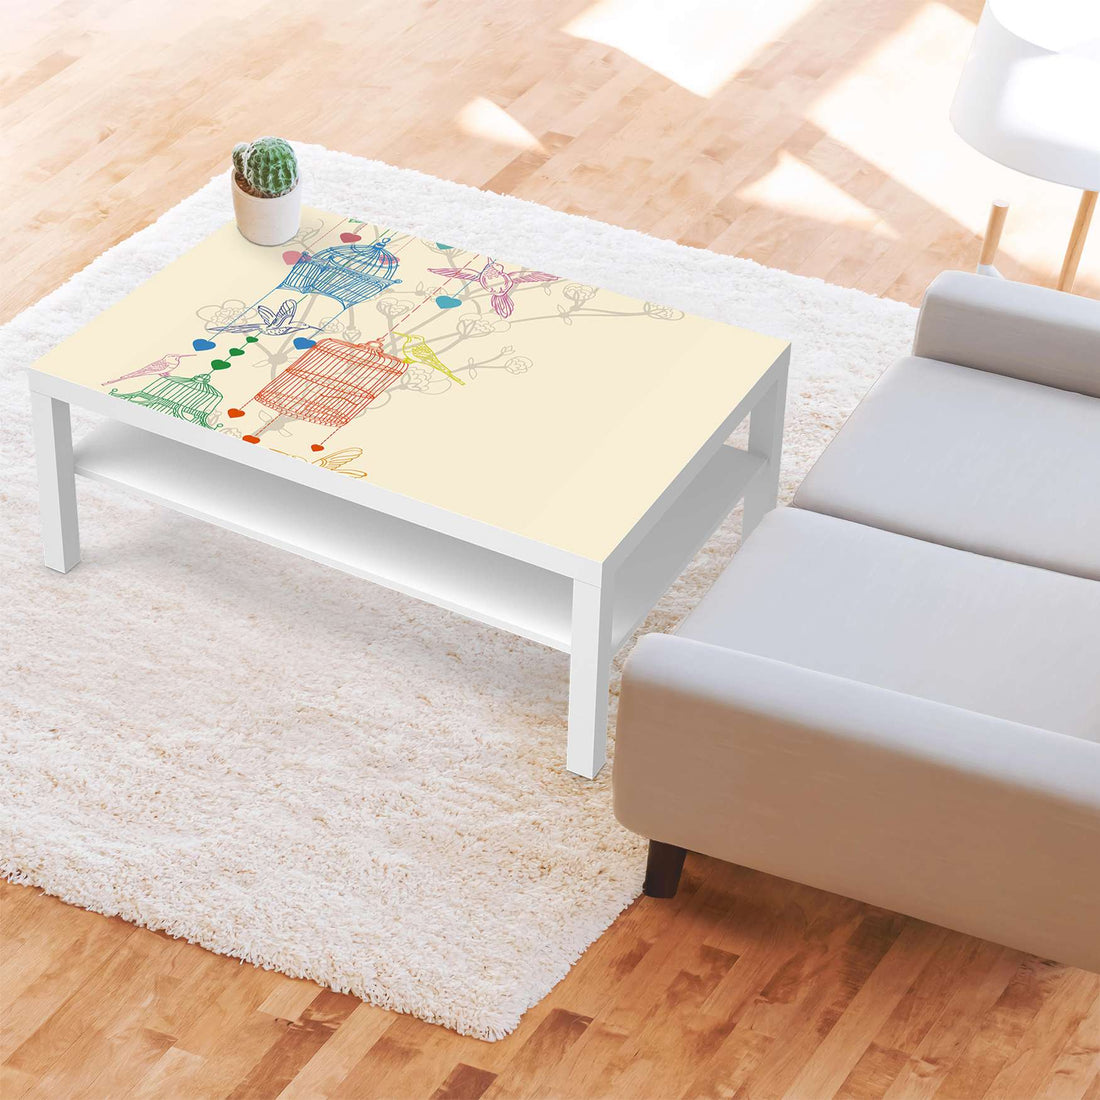 Klebefolie Birdcage - IKEA Lack Tisch 118x78 cm - Wohnzimmer